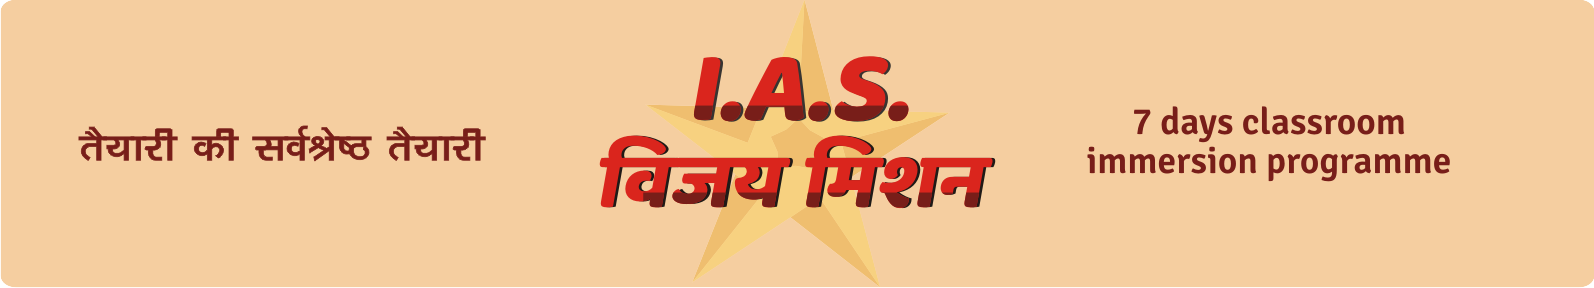 IAS Vijay Mission